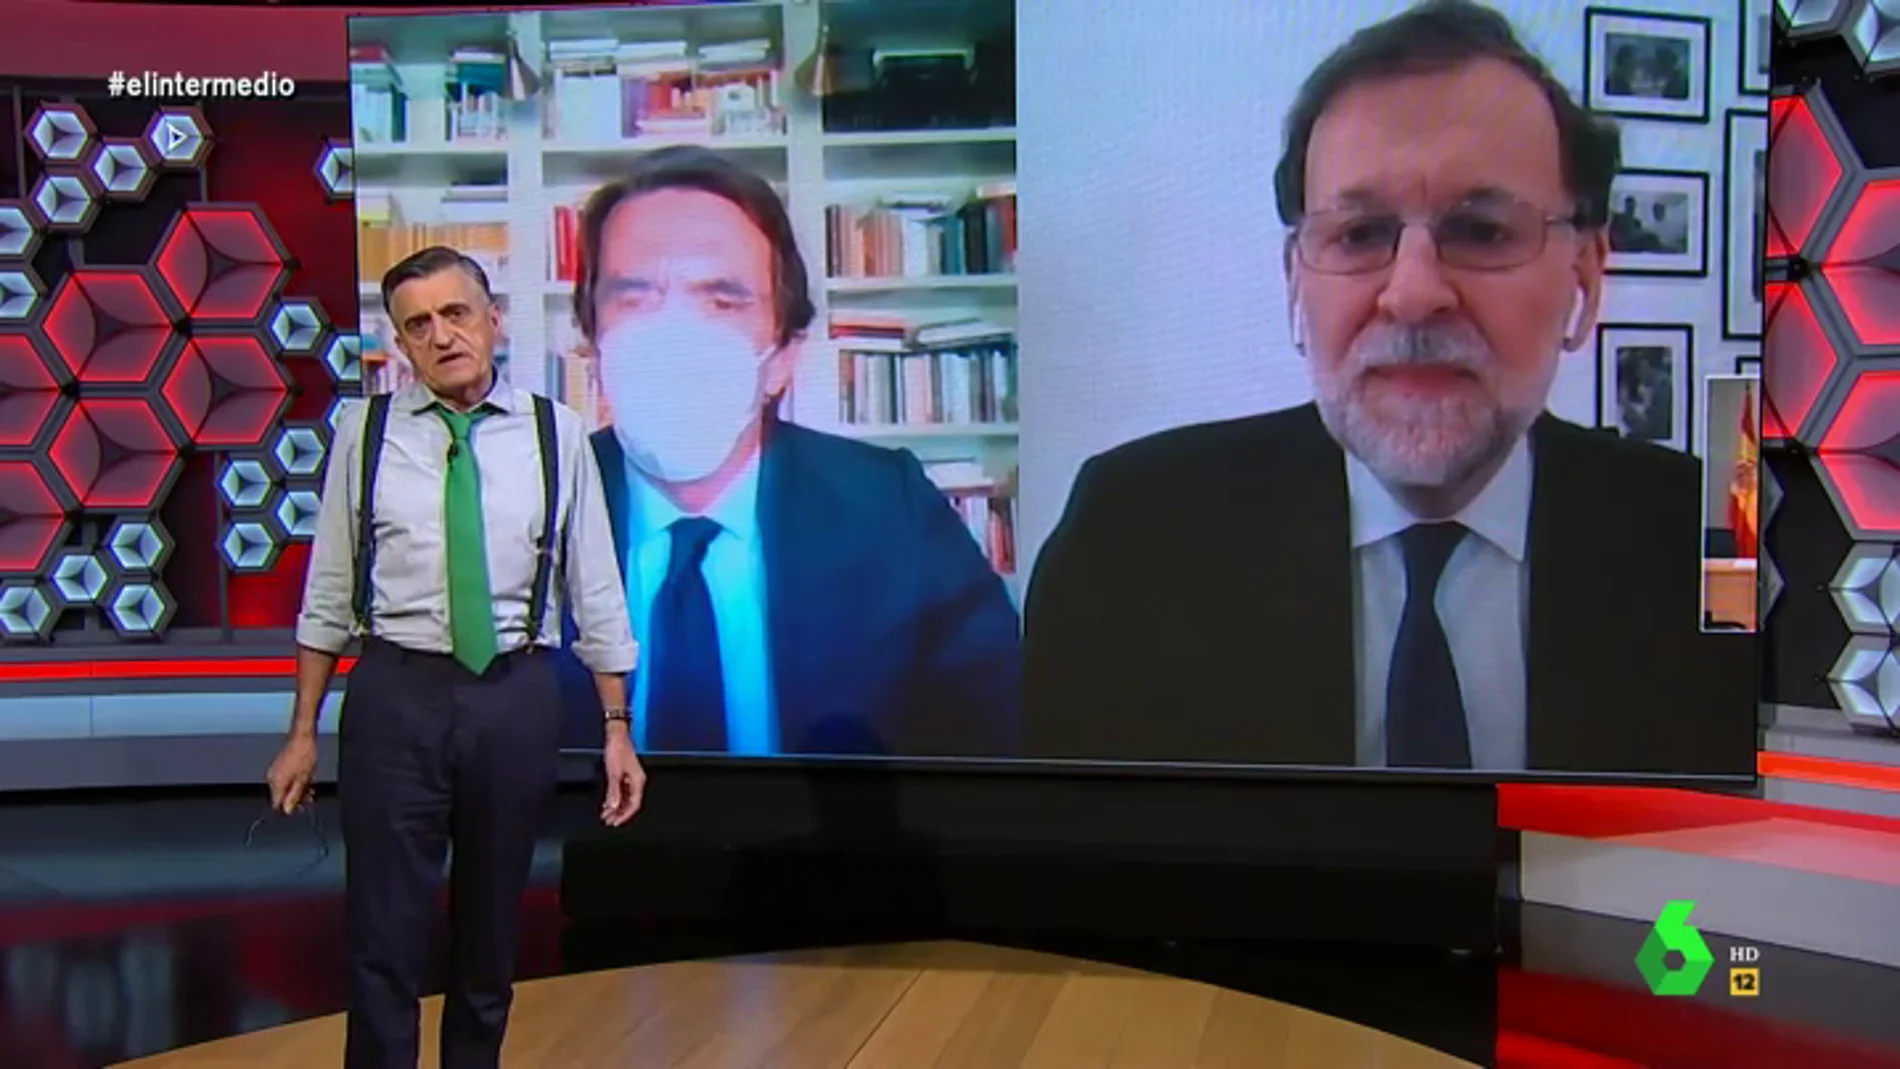 Wyoming carga contra la "anestesia social y mediática" al ver a Rajoy y Aznar compareciendo: "No nos acostumbremos a lo excepcional"